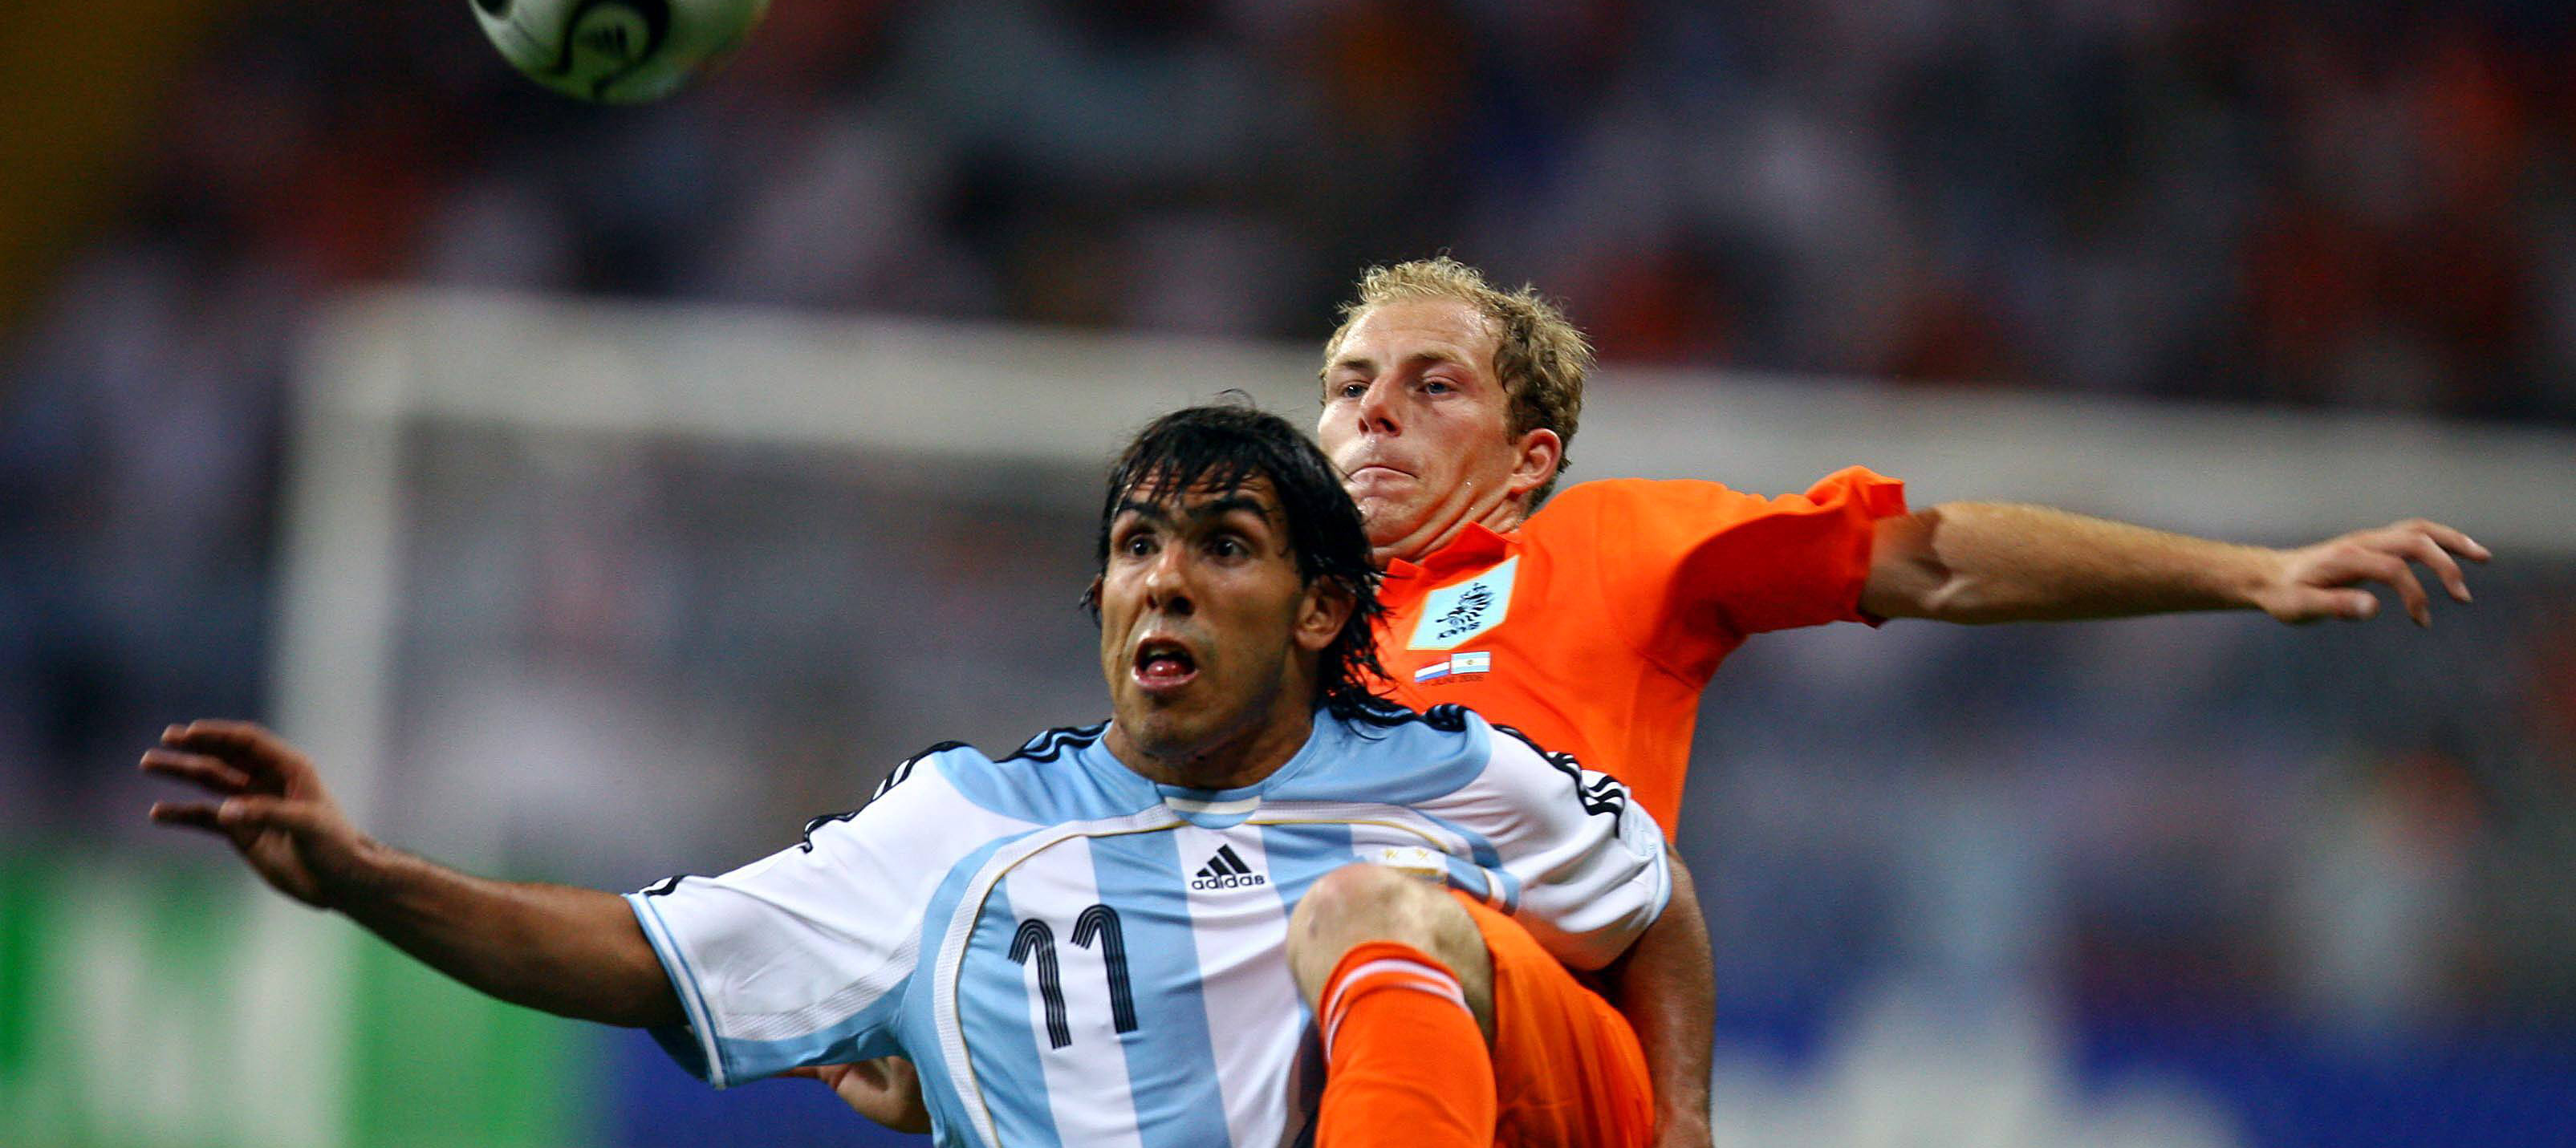 Tim de Cler moest tijdens het duel met Argentinië op het WK 2006 vooral opboksen tegen Carlos Tévez.